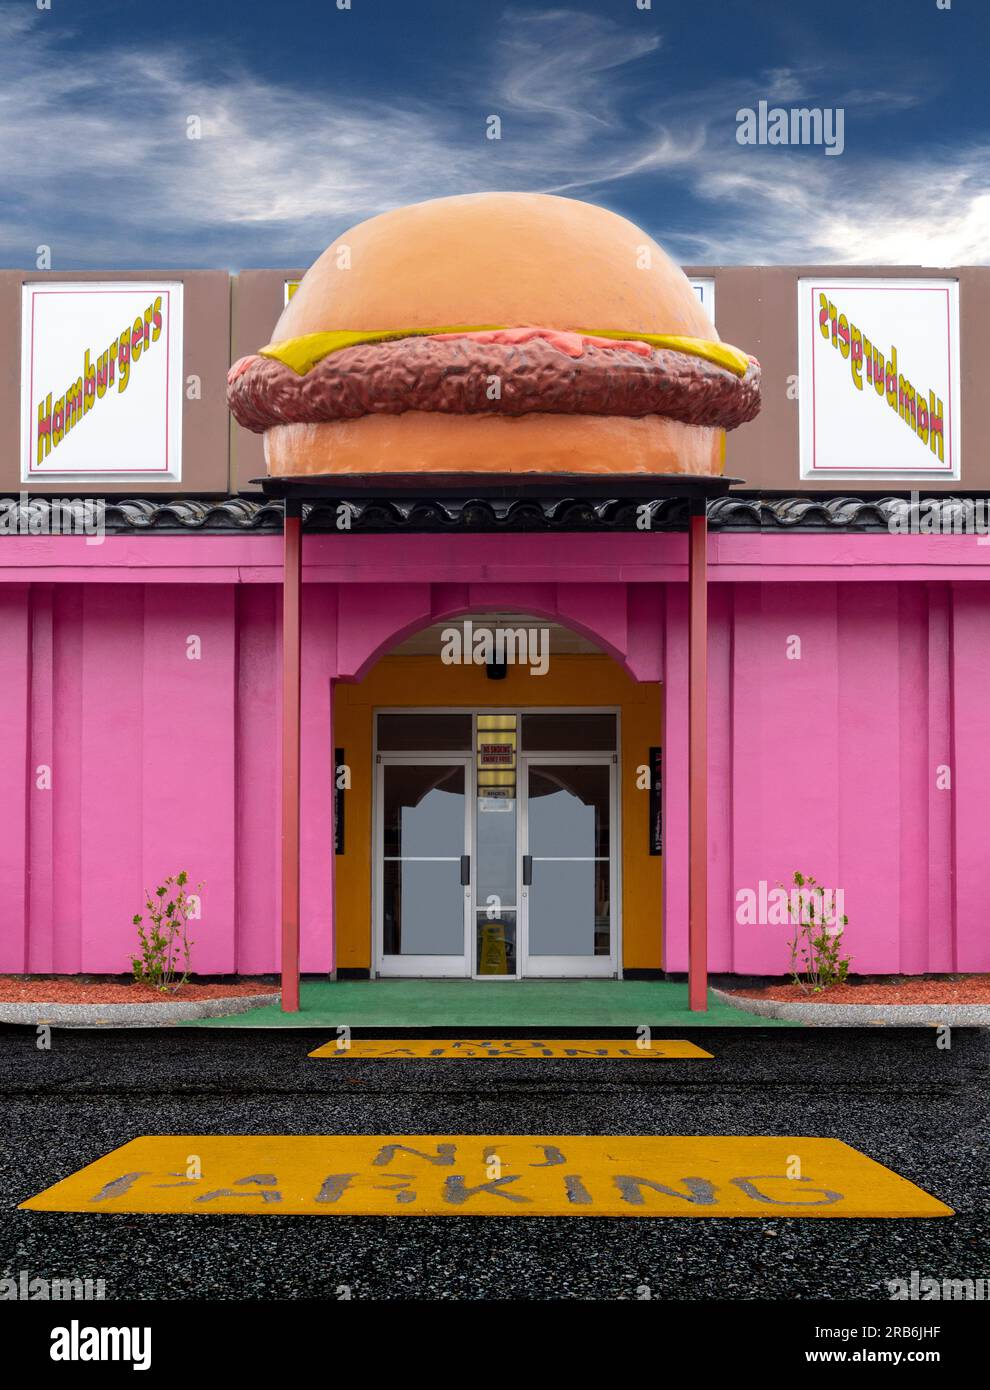 Stand de hamburger Banque D'Images